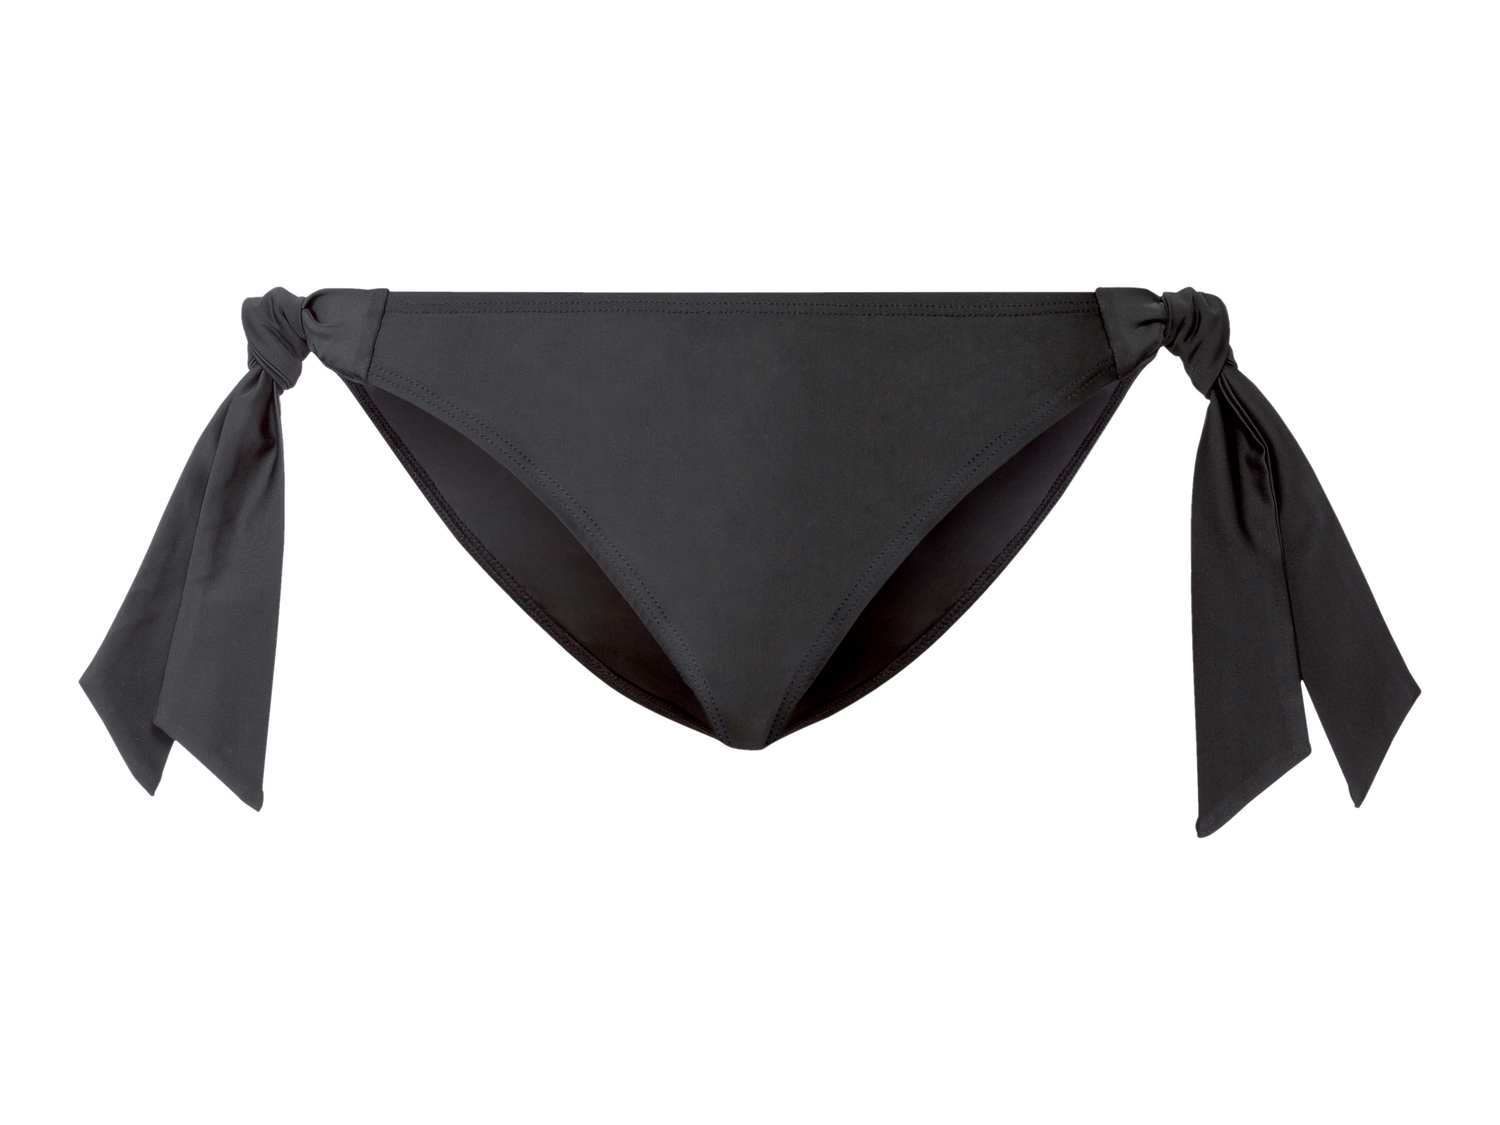 Slip-bikini da donna Esmara, prezzo 3.99 &#8364; 
Misure: 38-44
Taglie disponibili

Caratteristiche

- ...